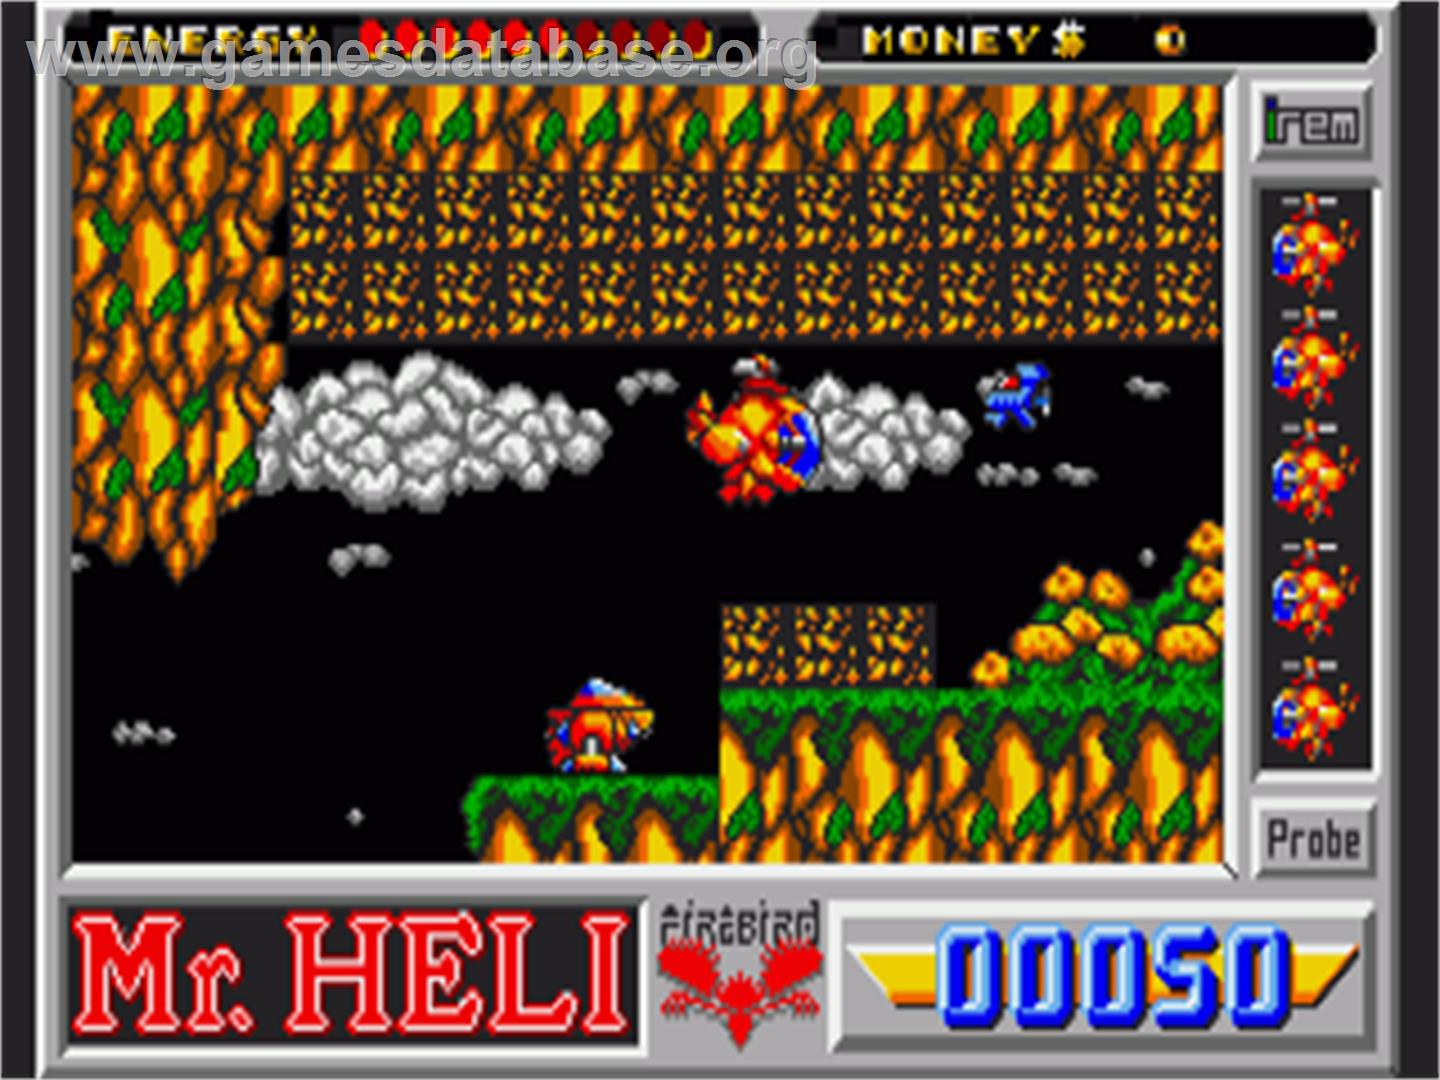 Mr. Heli - Commodore Amiga - Artwork - In Game